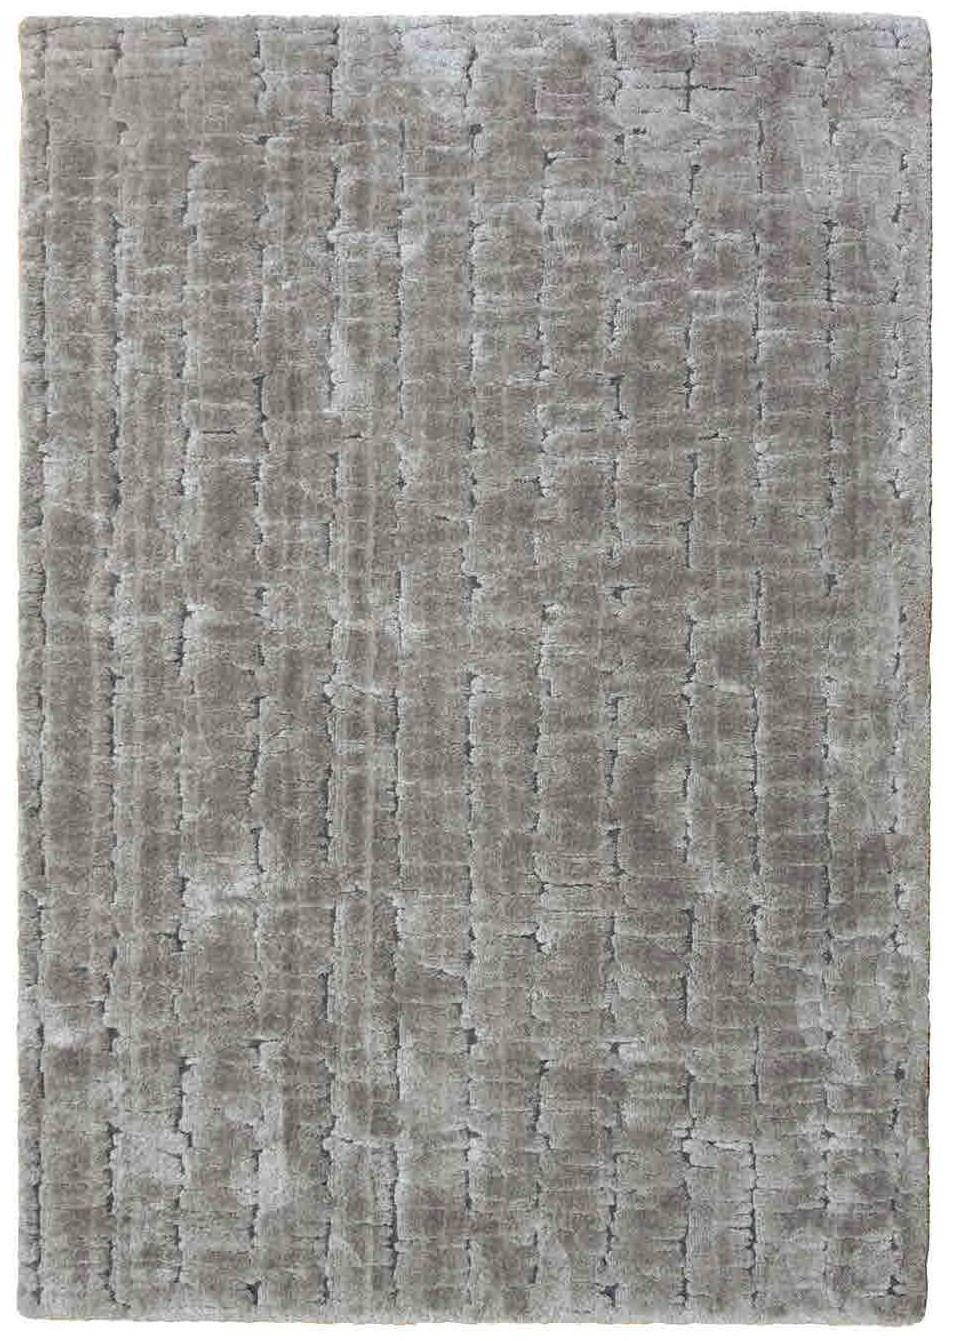 O tapete Miura é um exemplo de elegância e sofisticação, com a sua textura única e acabamentos requintados. Uma peça que vai realçar qualquer divisão da casa.